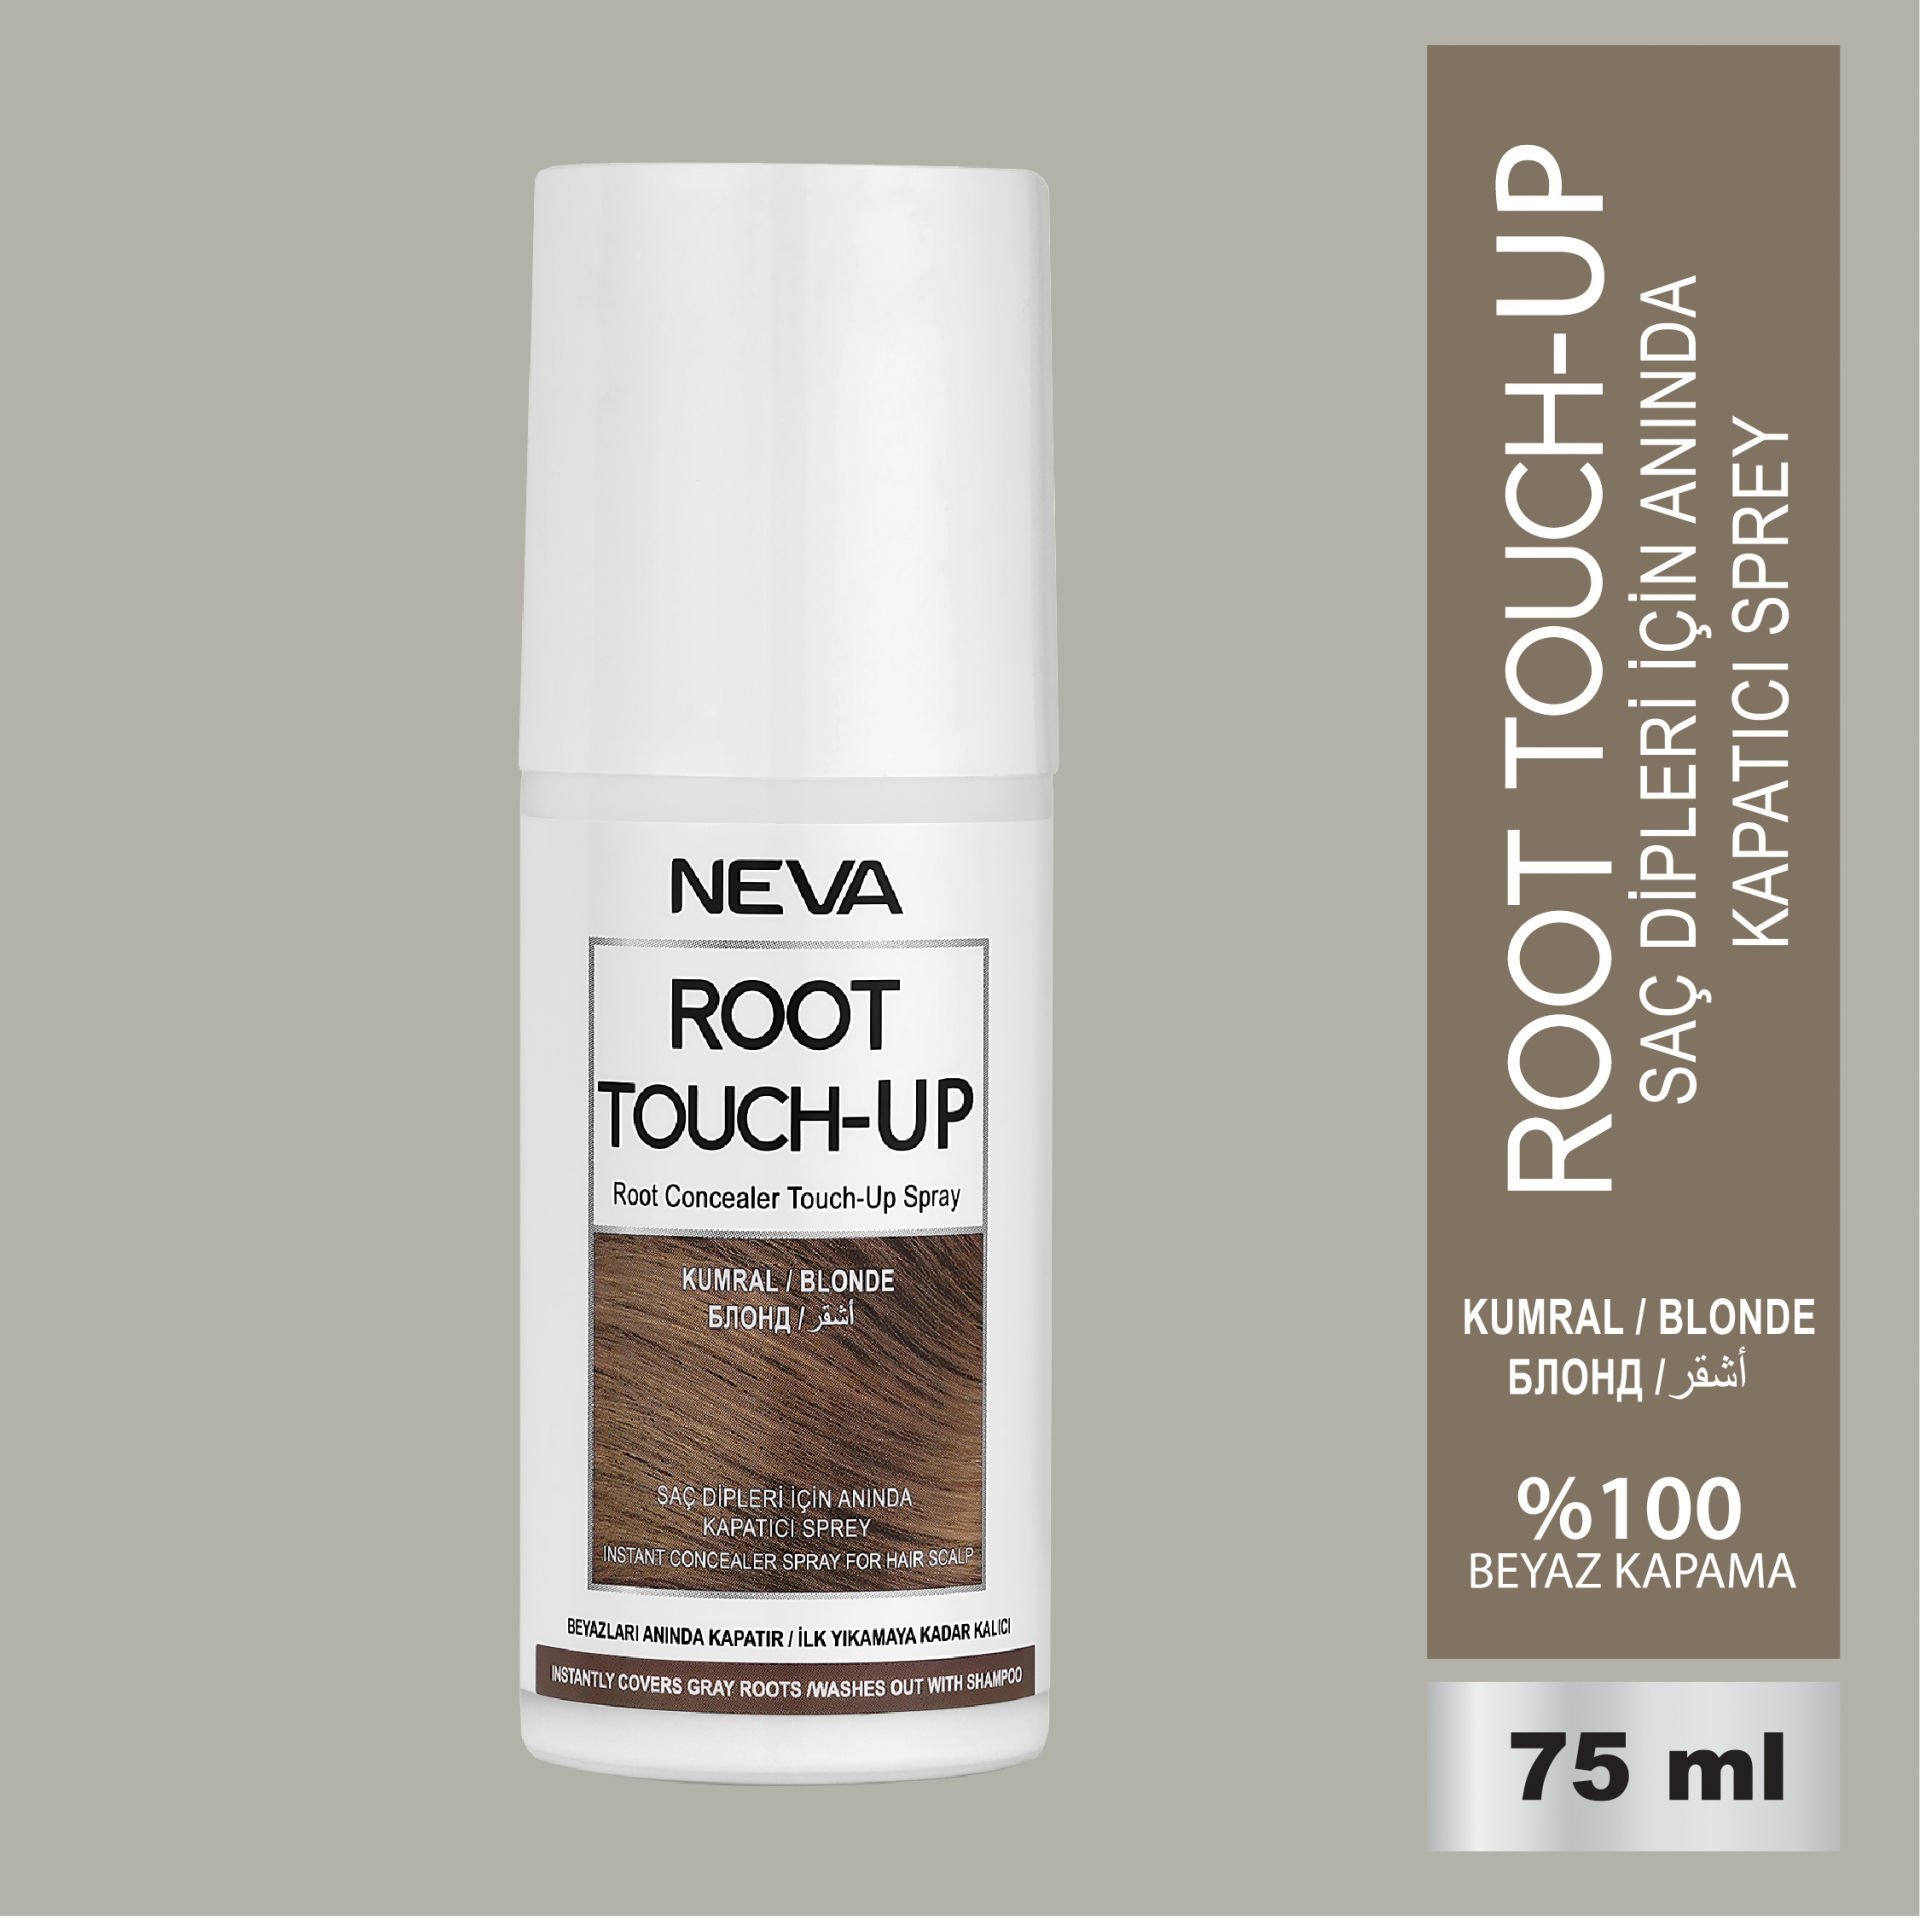 NEVA ROOT TOUCH-UP Saç Dipleri İçin Anında Kapatıcı Sprey- Kumral 75ml